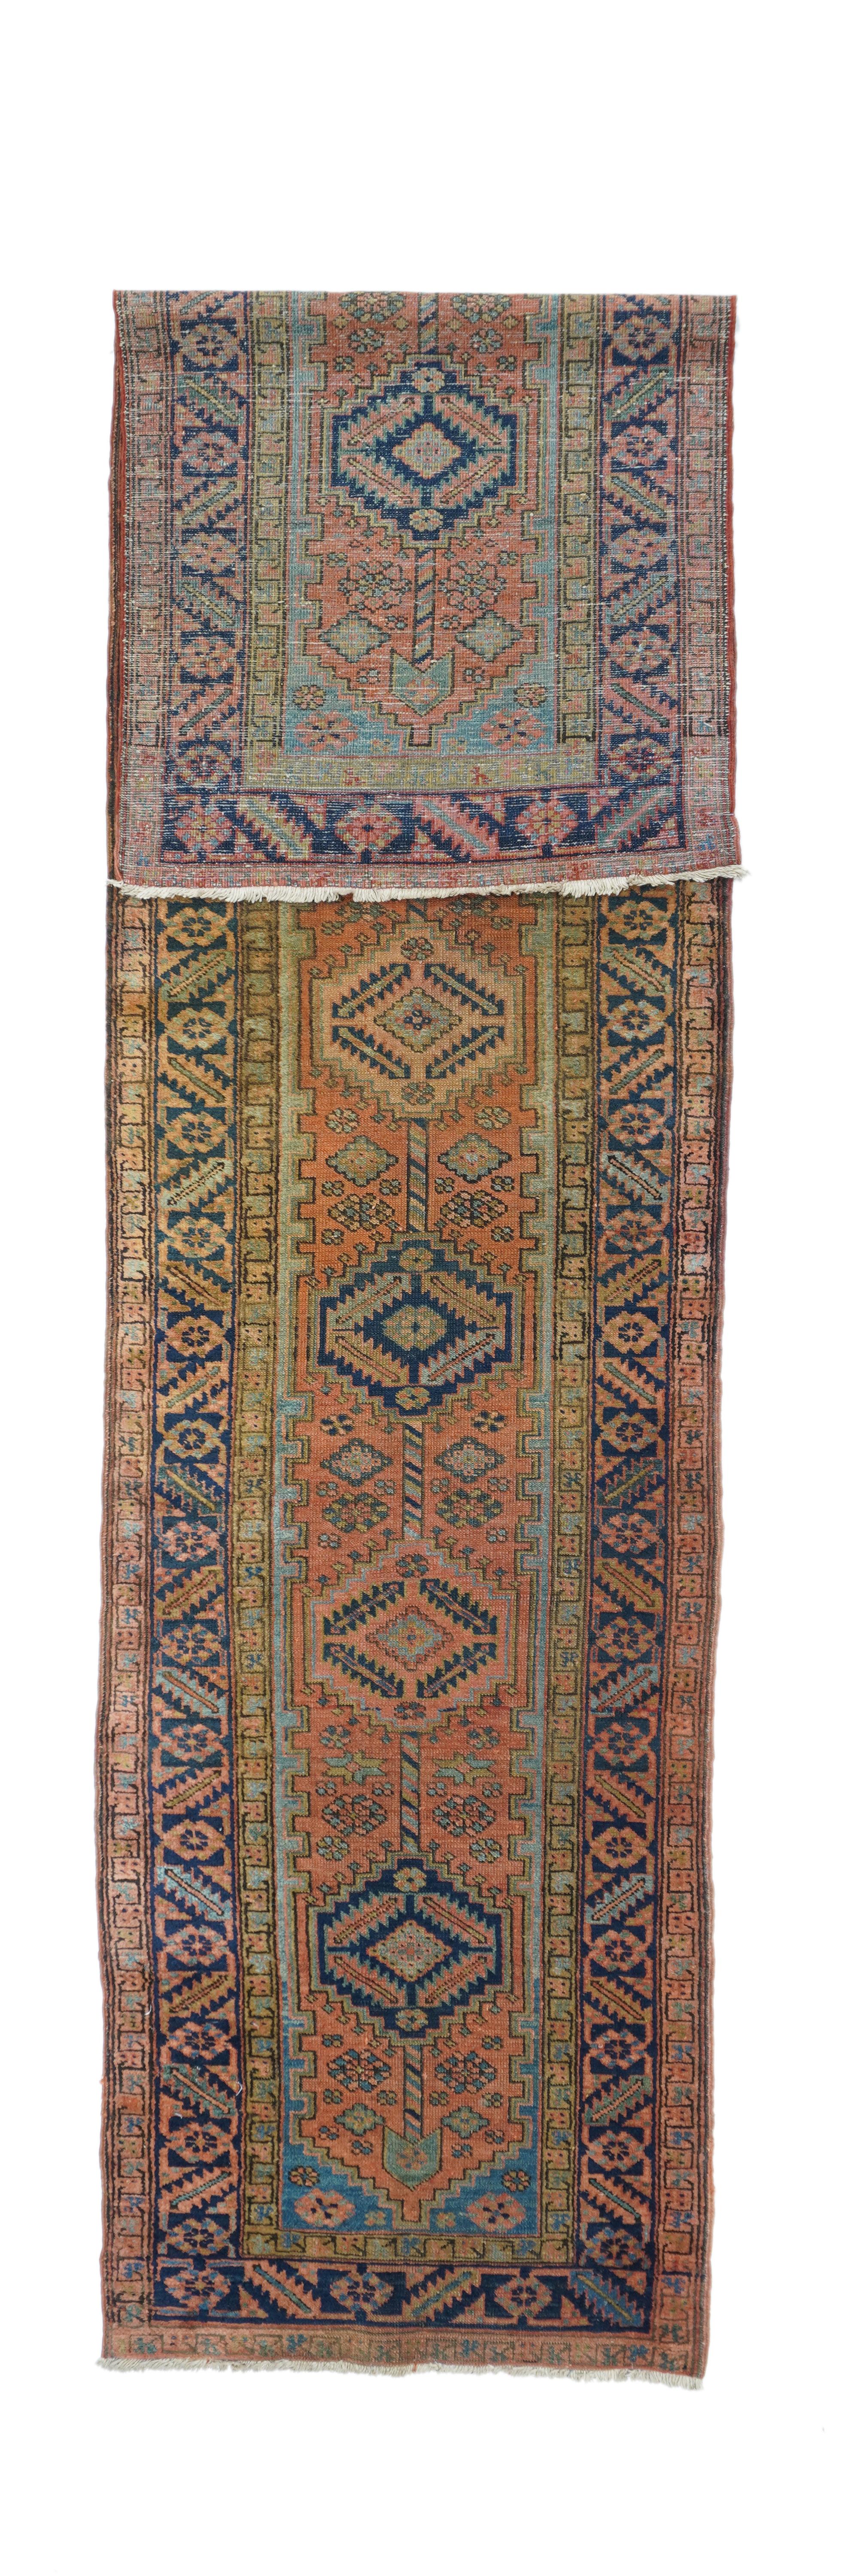 Heriz rug measures 3'0'' x 13'0''.